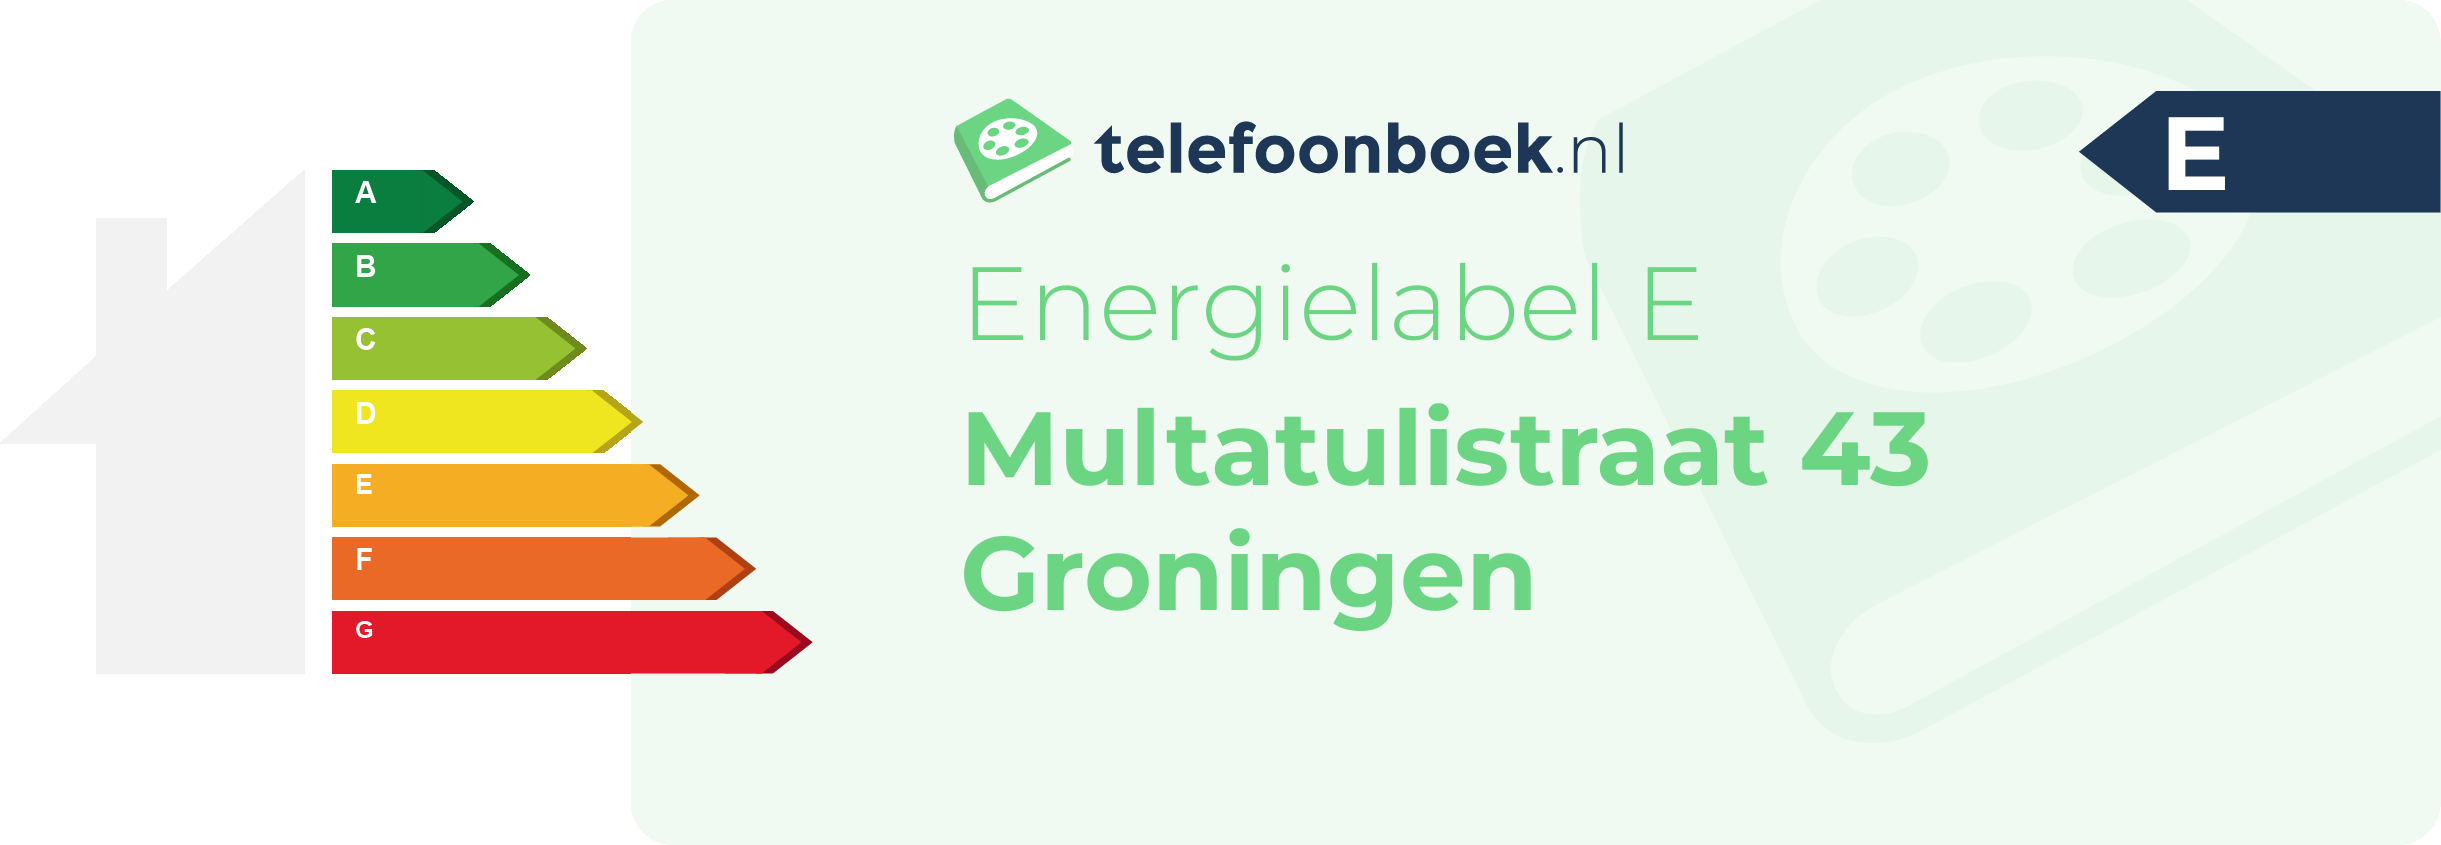 Energielabel Multatulistraat 43 Groningen